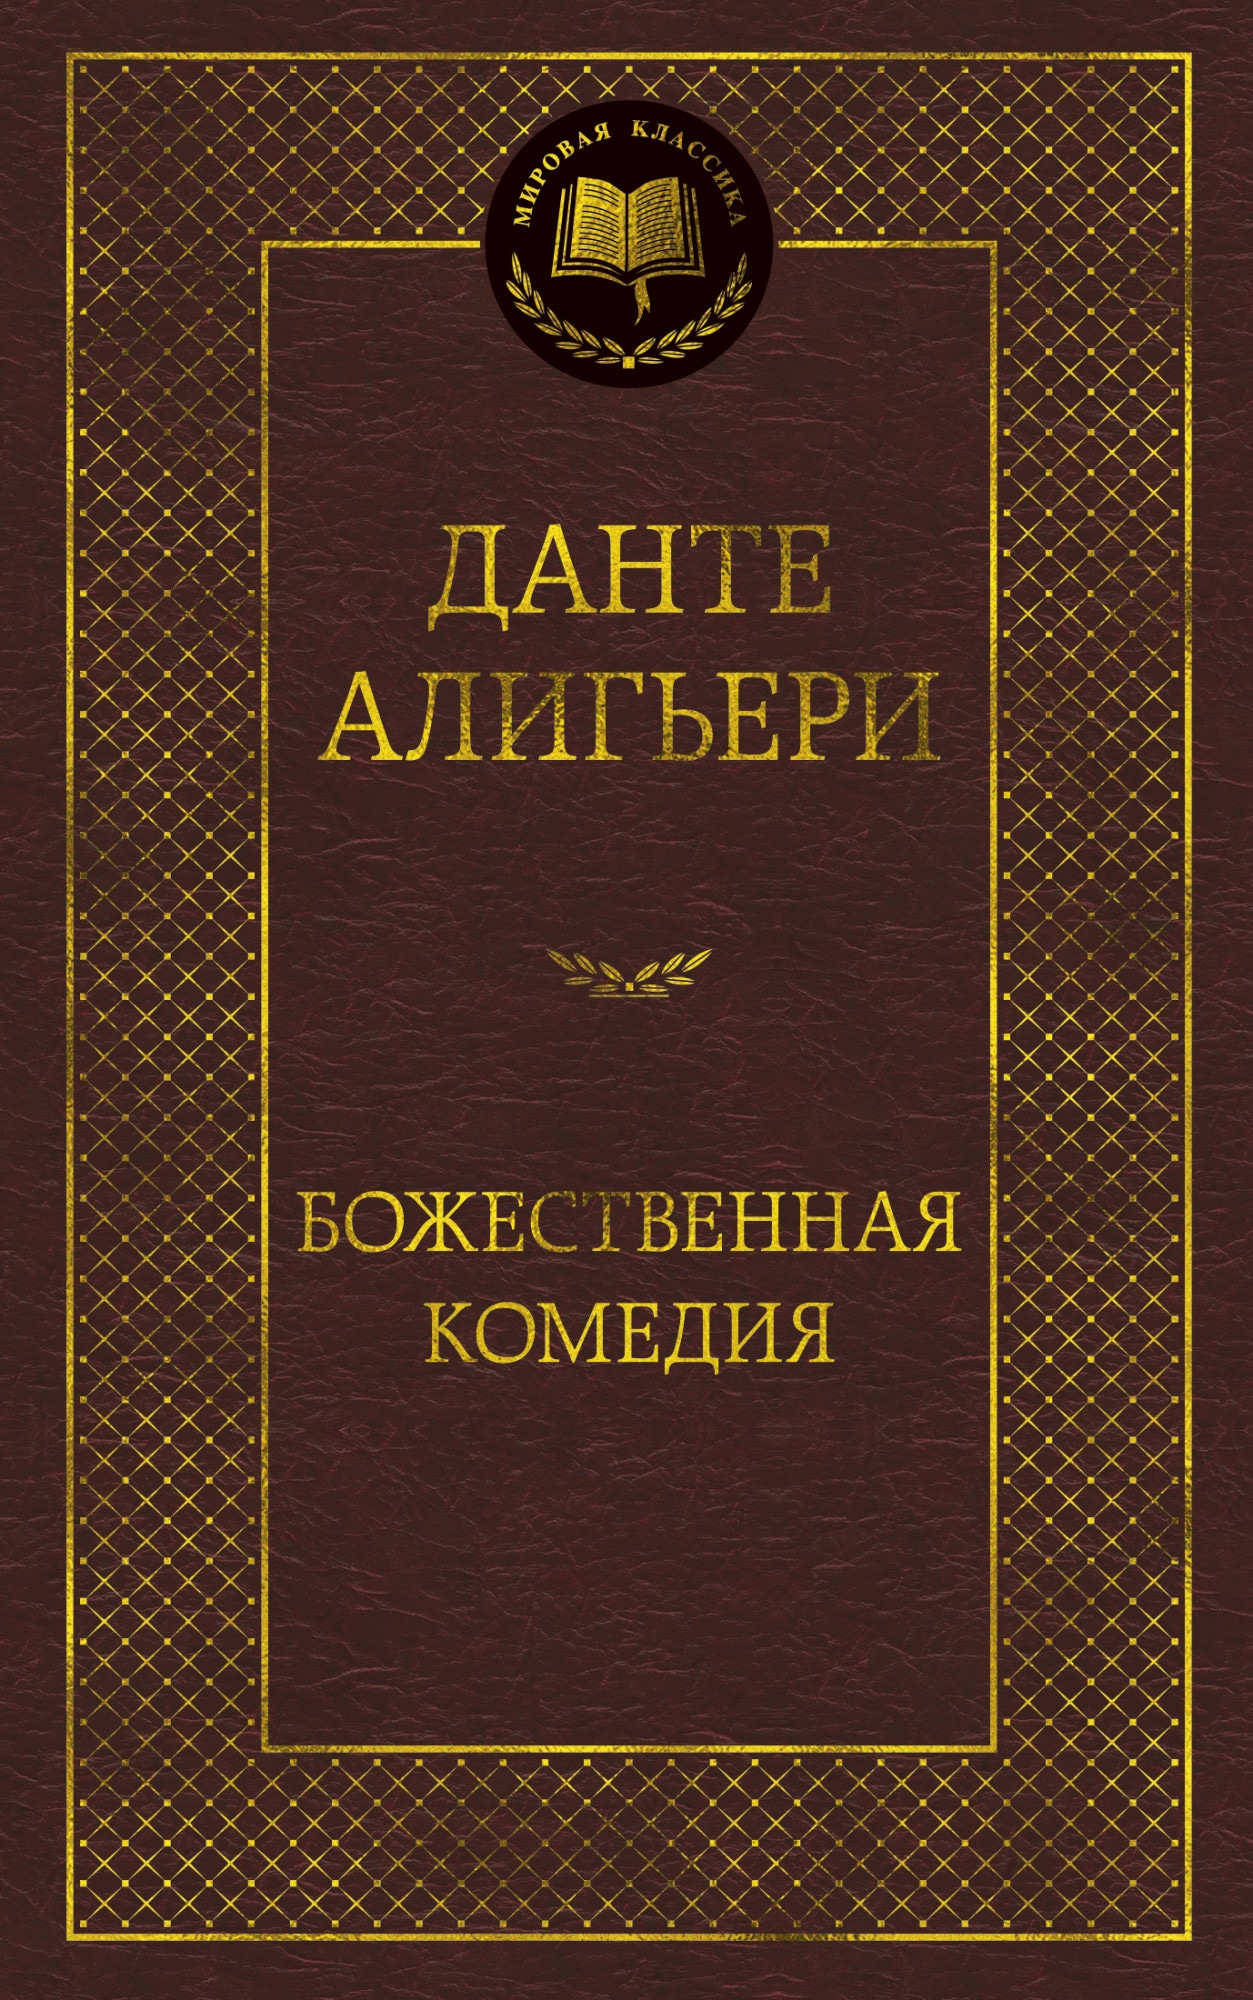 Book “Божественная Комедия” by Данте Алигьери — 2021